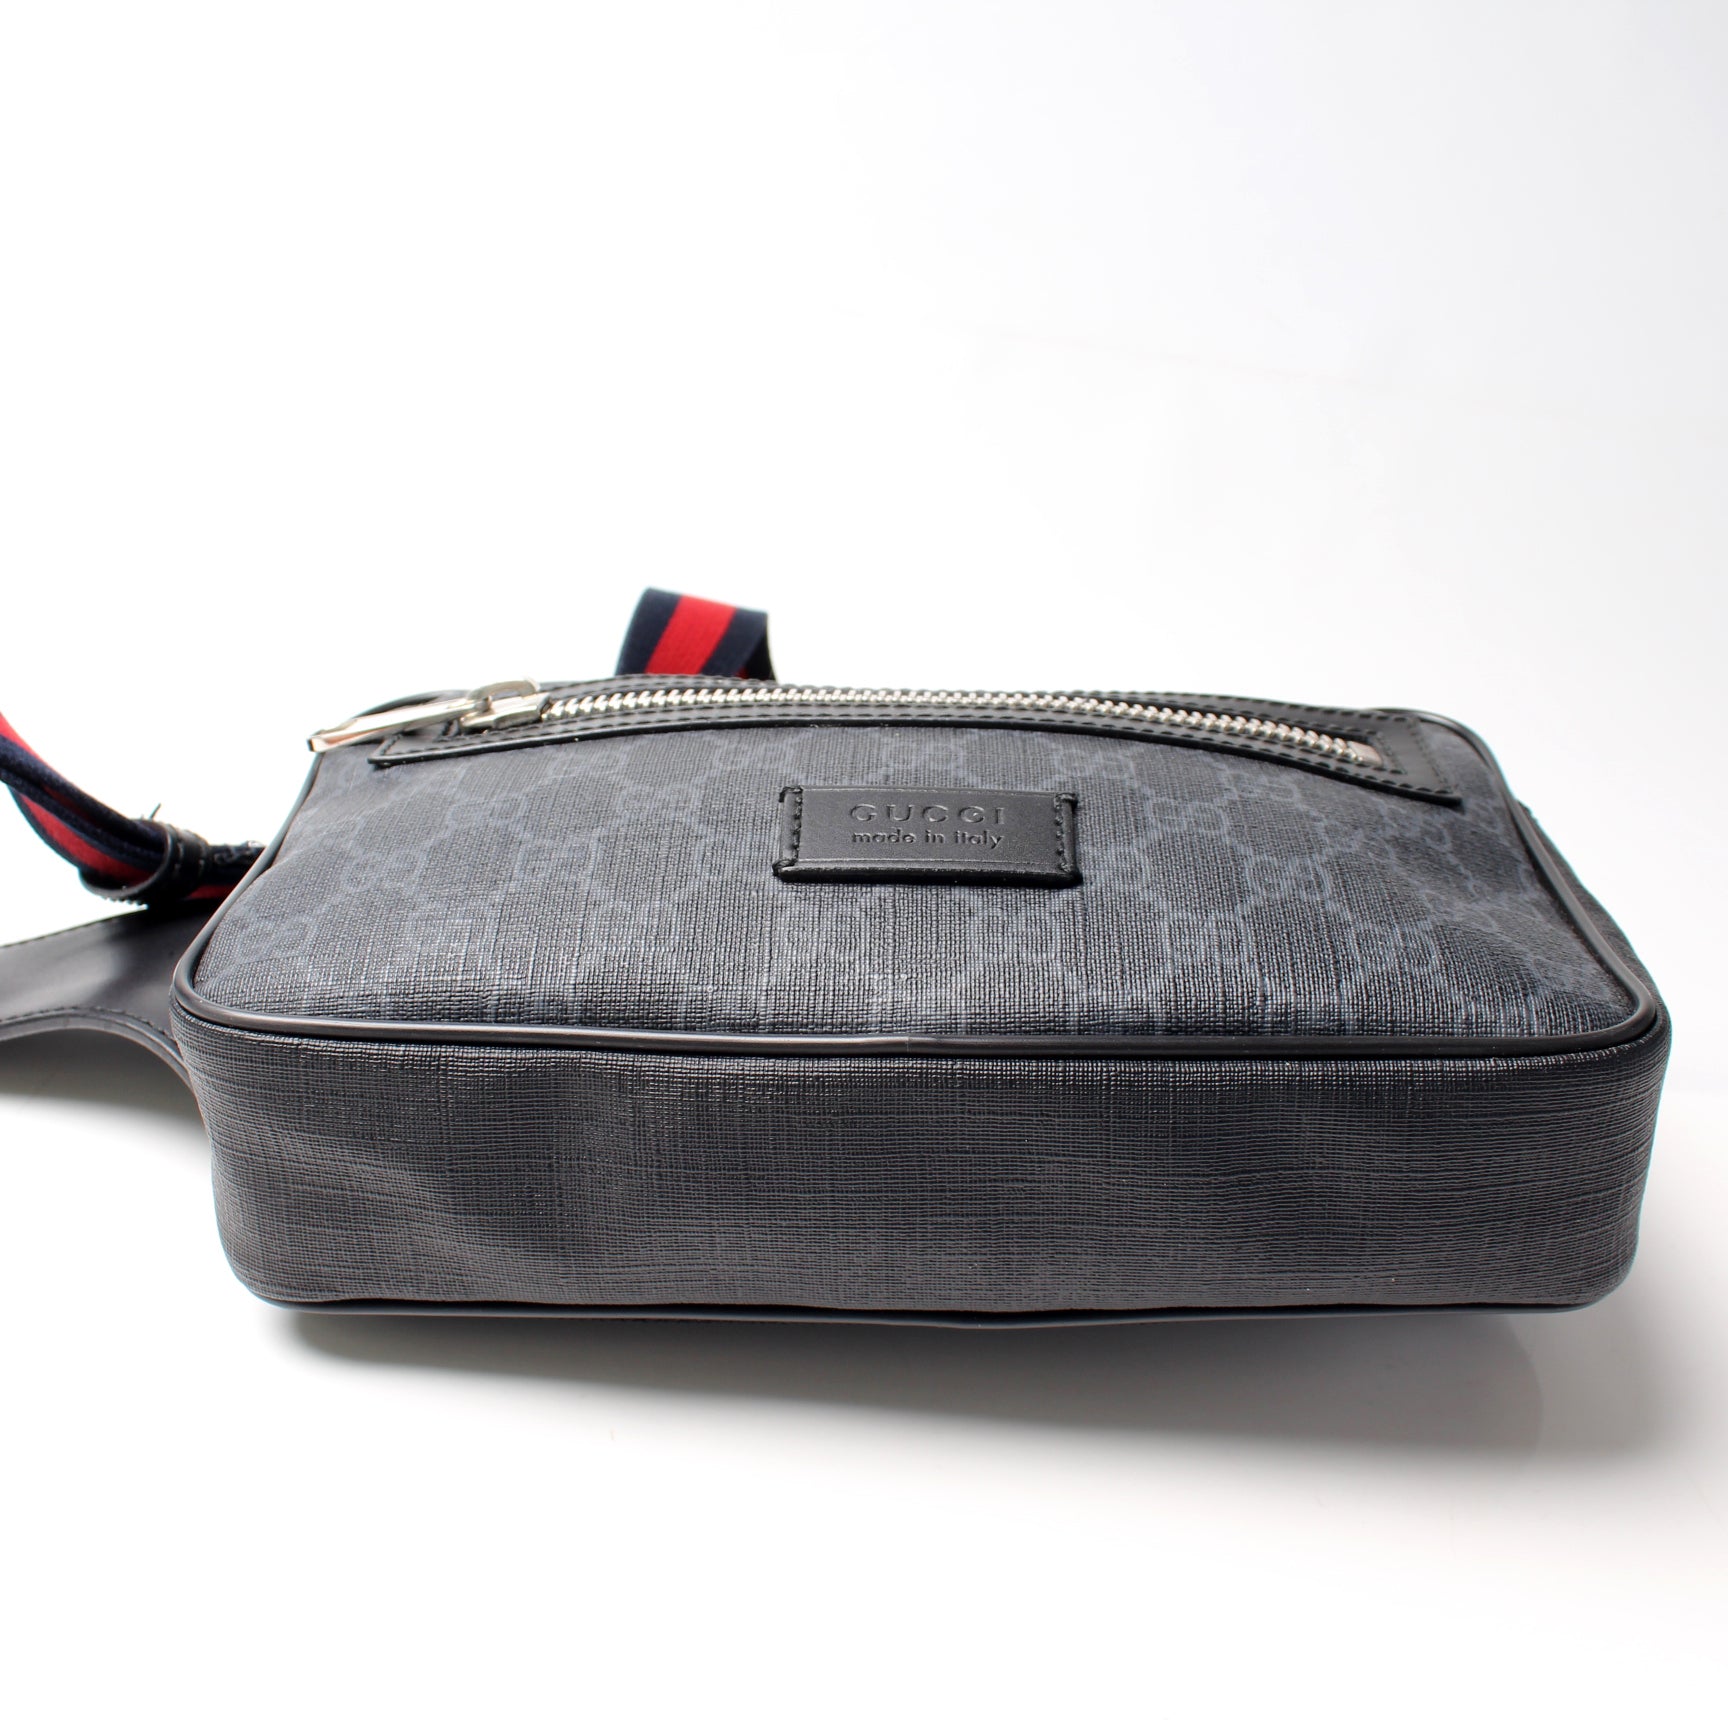 474293 Soft GG Supreme Belt Bag – Keeks Designer Handbags